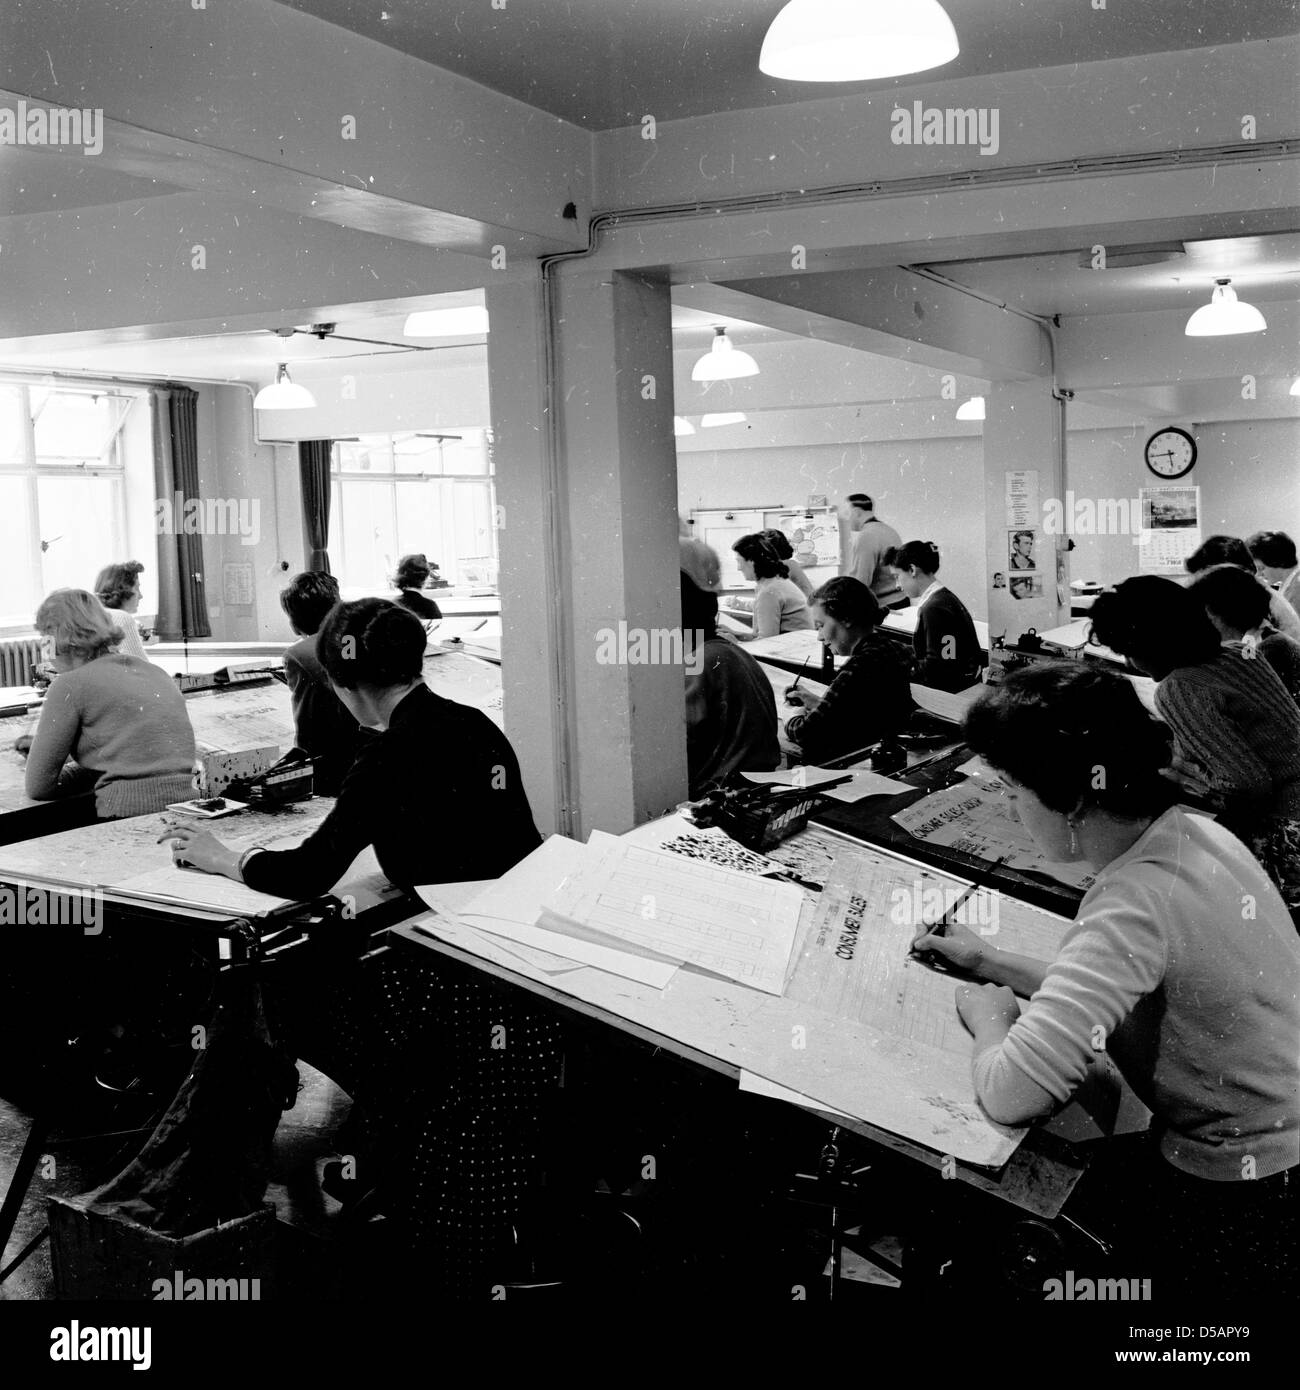 Image historique, années 1960. Groupe de femmes travaillant dans un bureau de type industriel sur de grands bureaux en métal pour établir les chiffres de vente. Banque D'Images